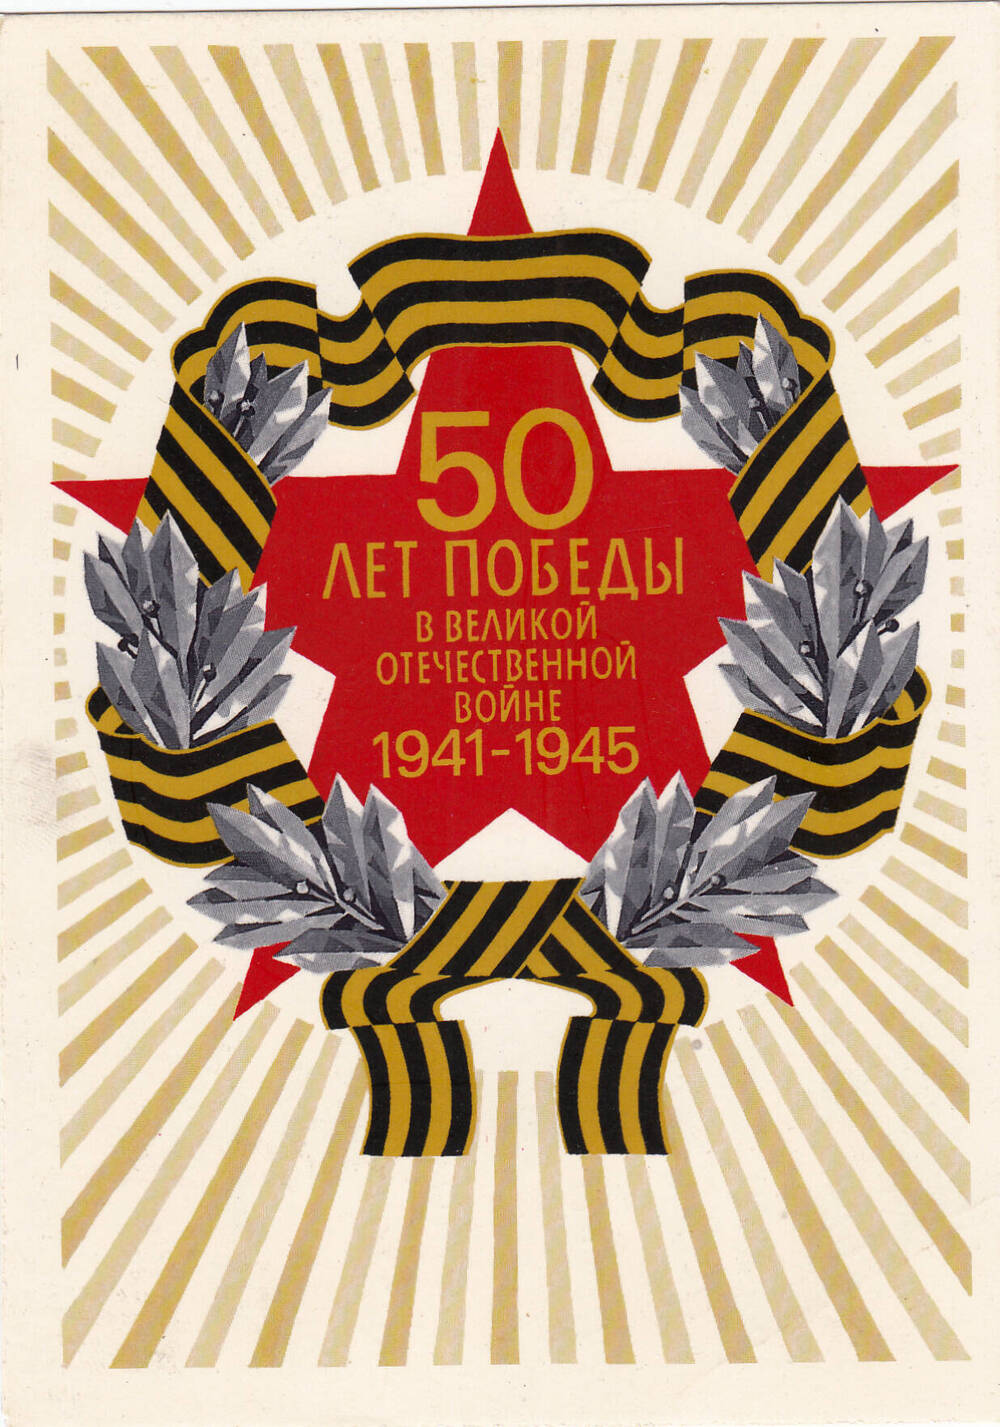 Поздравительная открытка  с 50-летием Победы  в Великой Отечественной войне Бухтеева Семена Николаевича